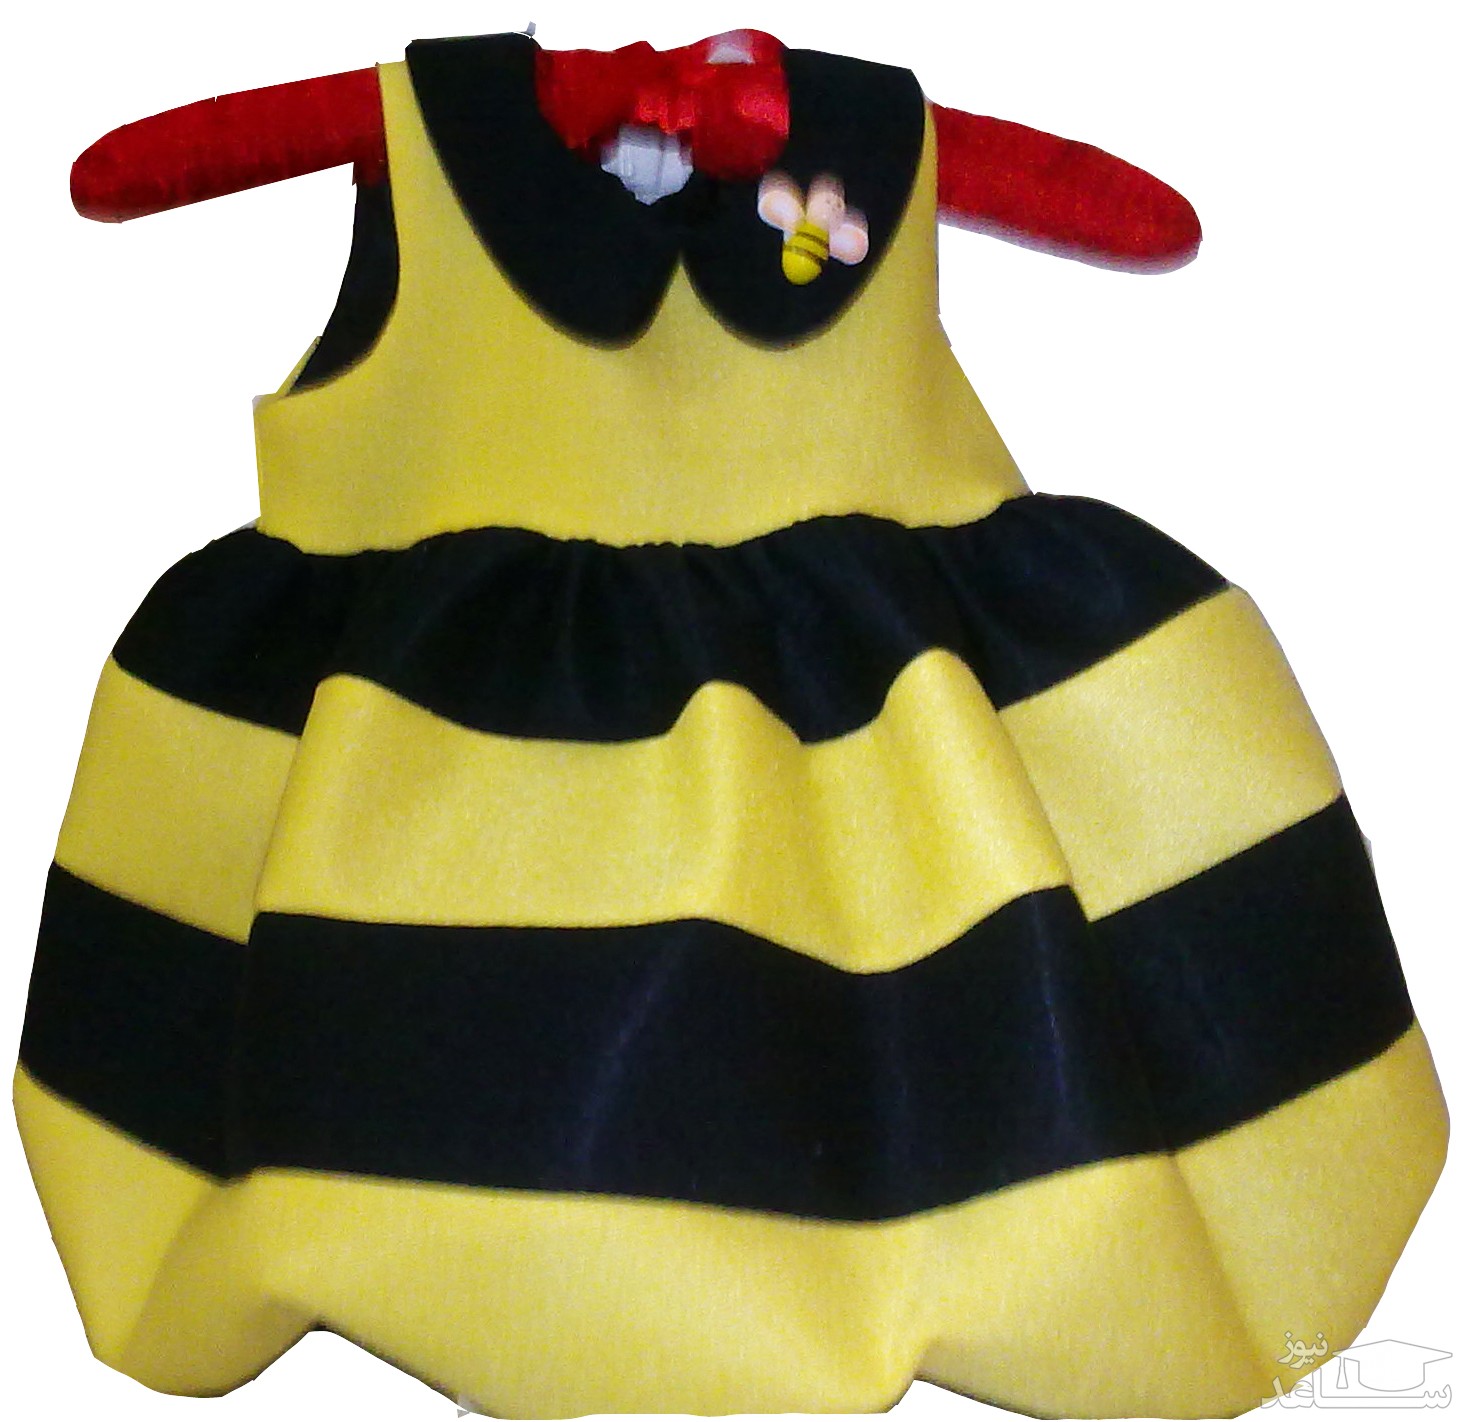 مدل لباس تم تولد زنبور عسل